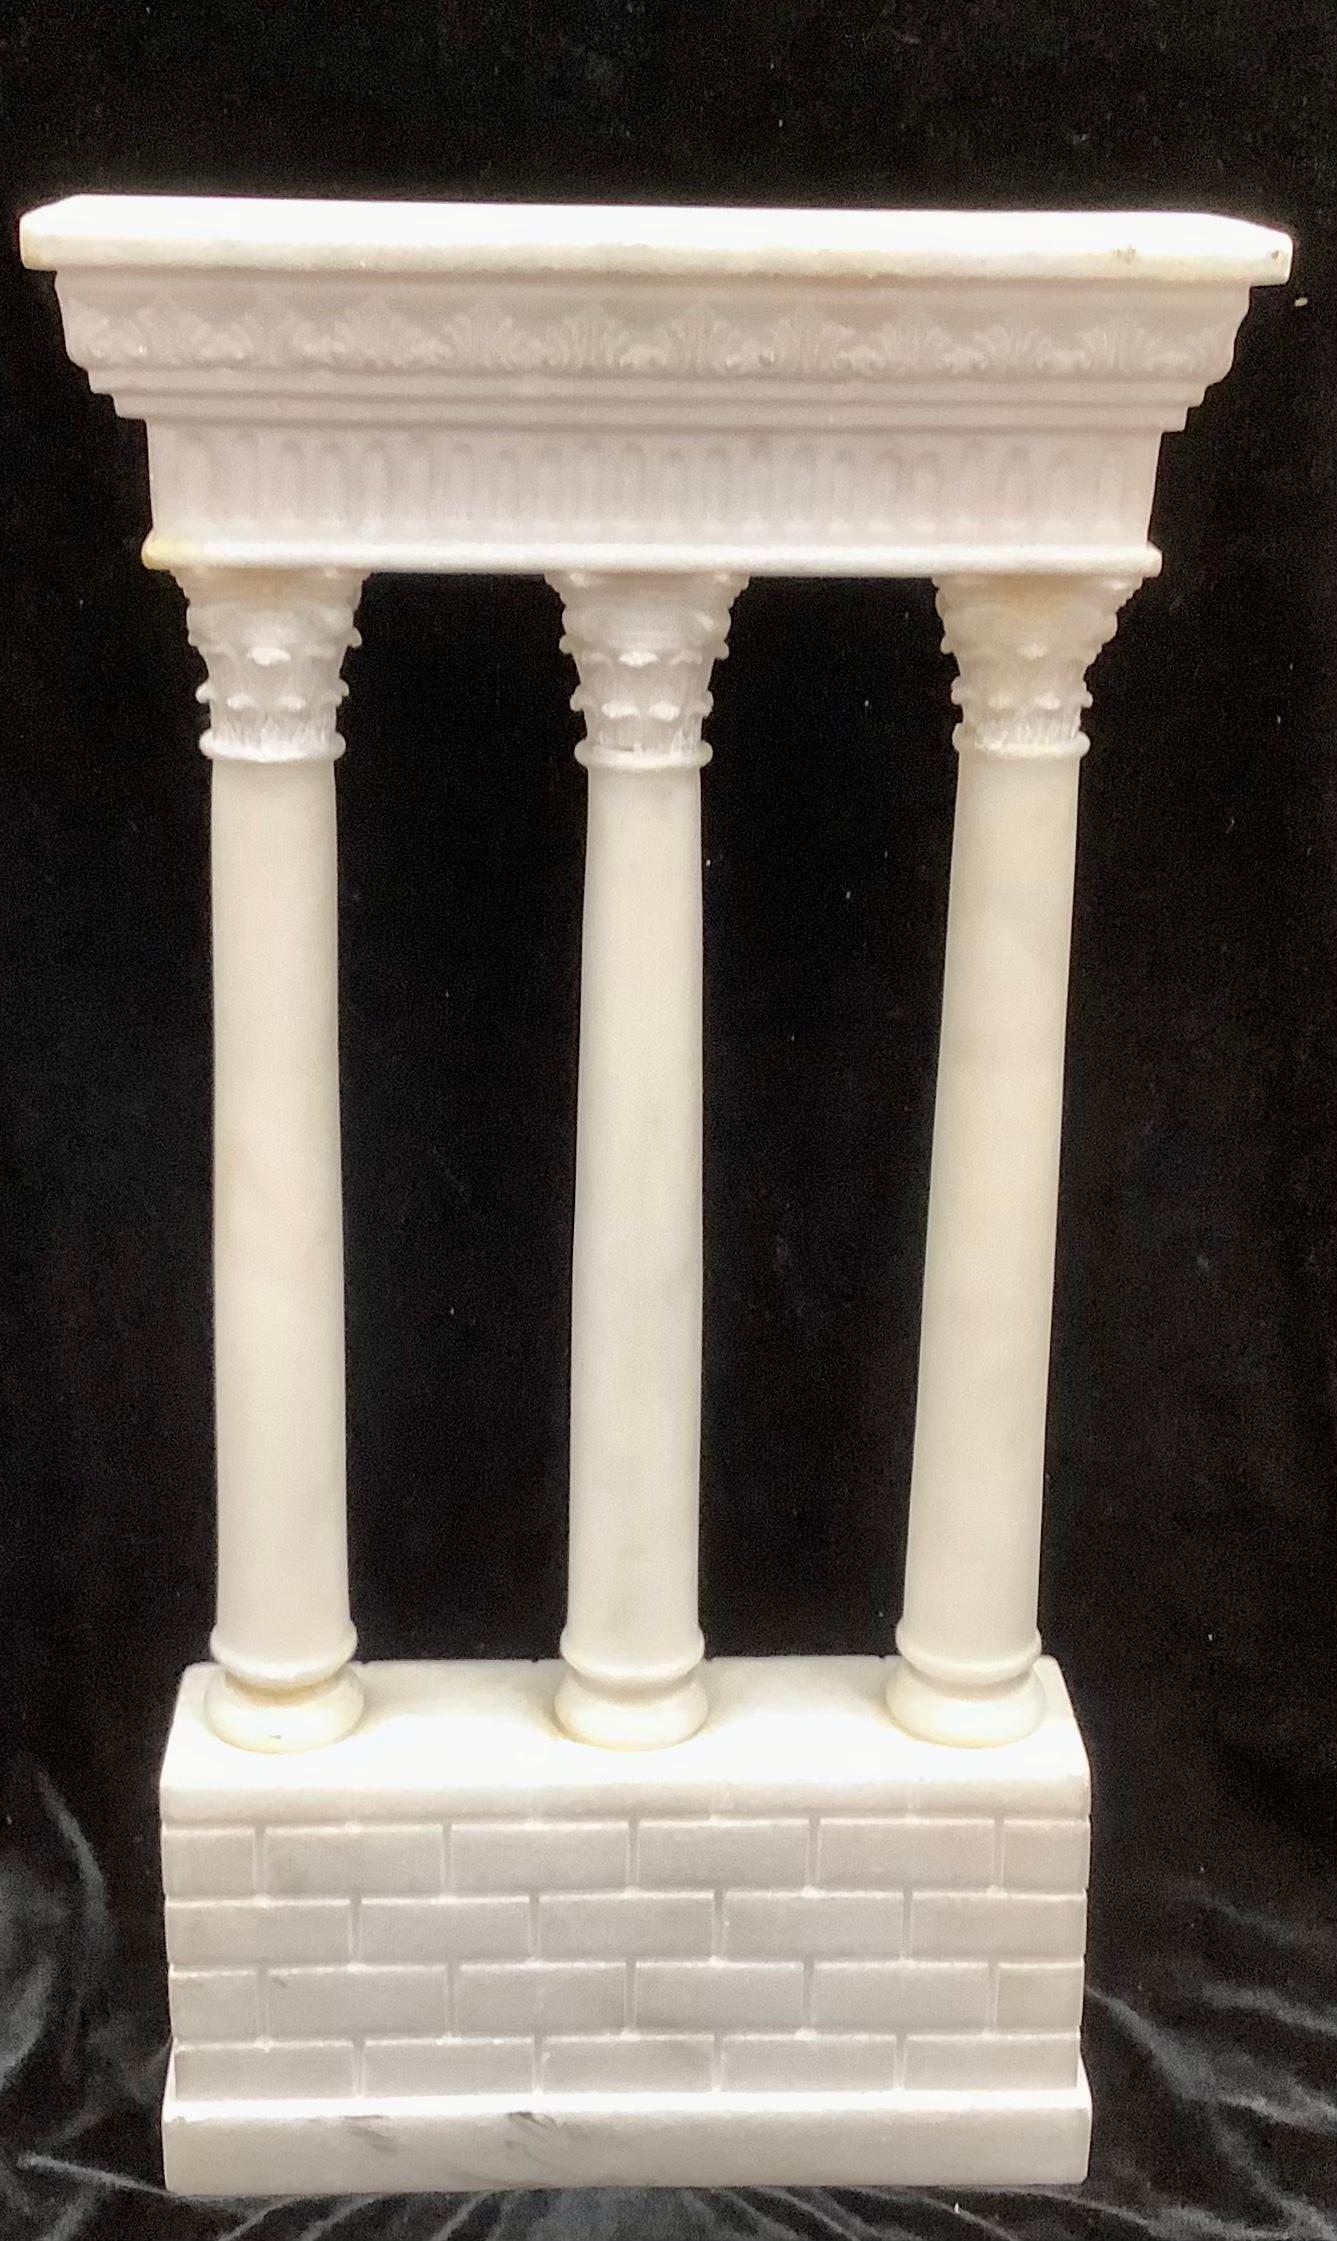 Statue originale de colonnes en marbre Victorien Grand Tour de Ruine Romaine, à collectionner absolument. 
Aux 18e et 19e siècles, l'éducation d'un gentleman n'était pas considérée comme complète tant qu'il n'avait pas fait un Grand Tour des sites